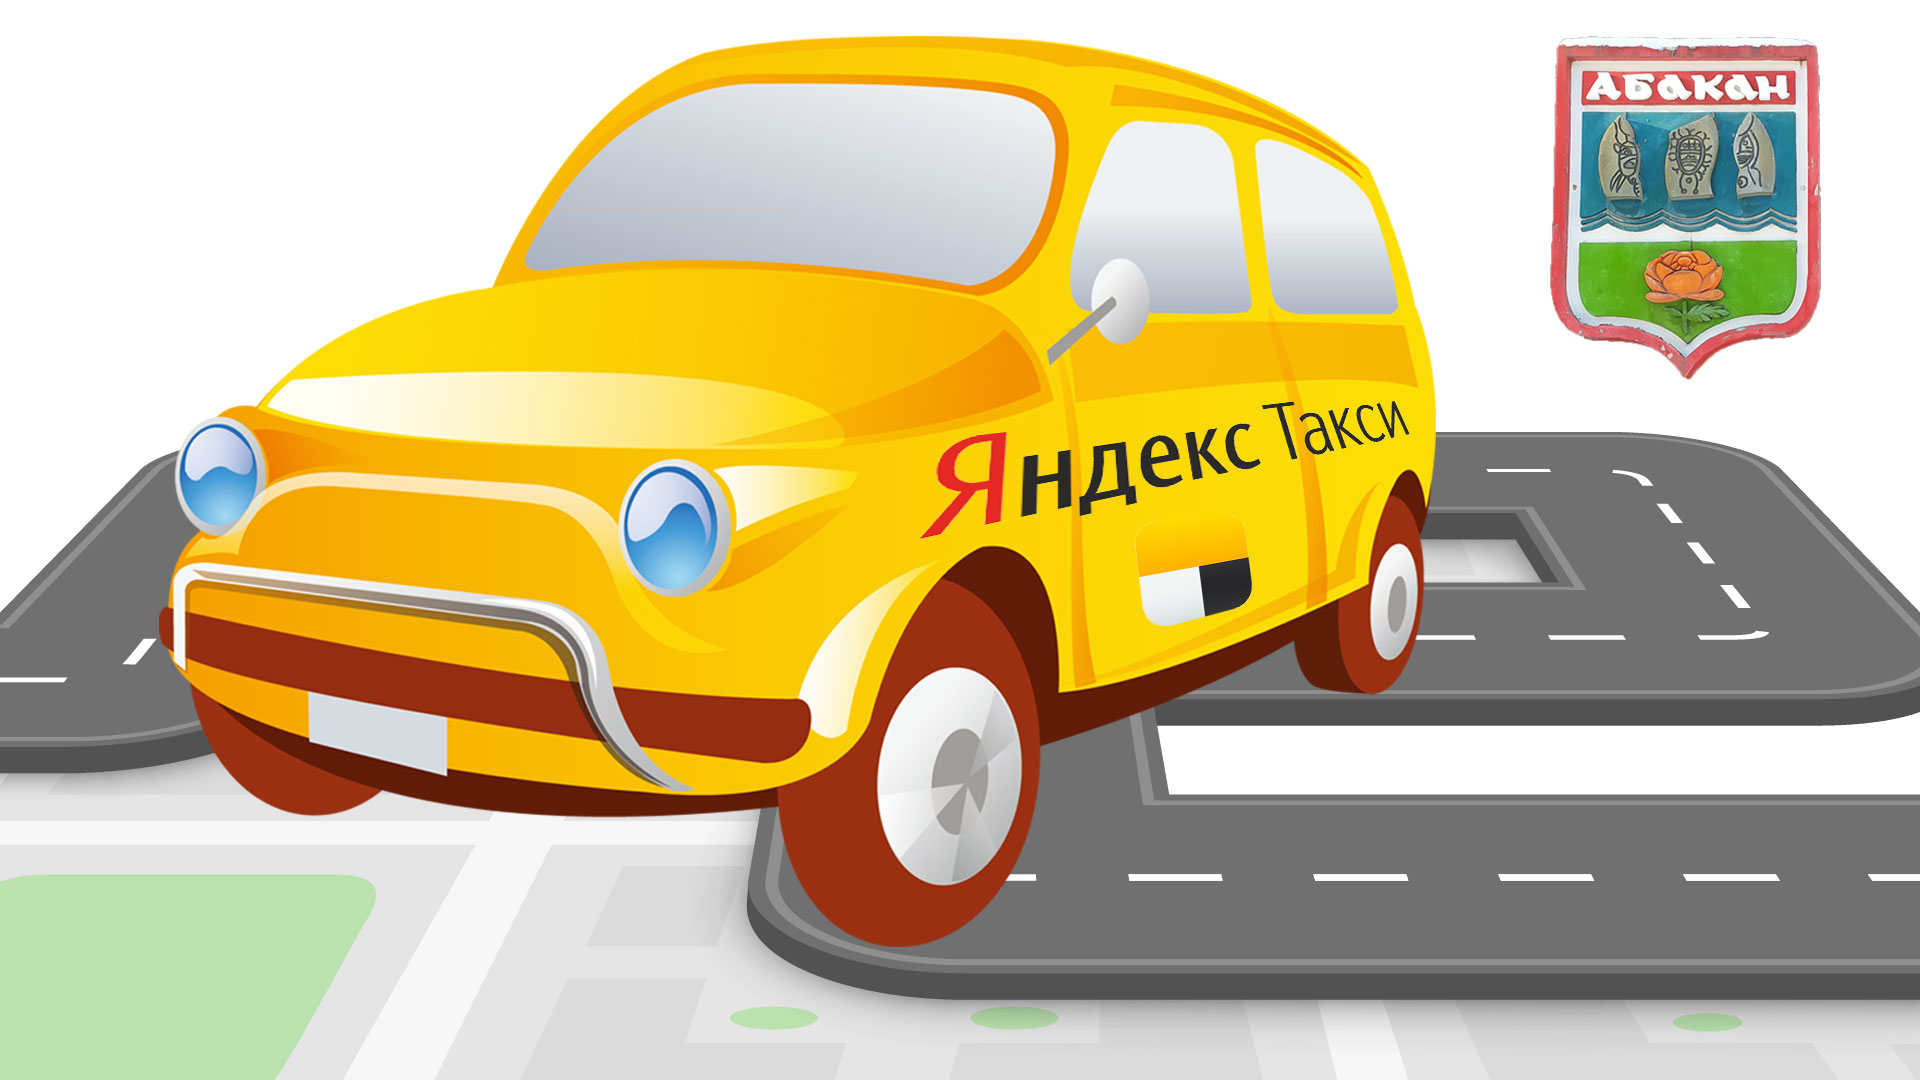 Машина с наклейкой Яндекс такси и герб г. Абакан. 